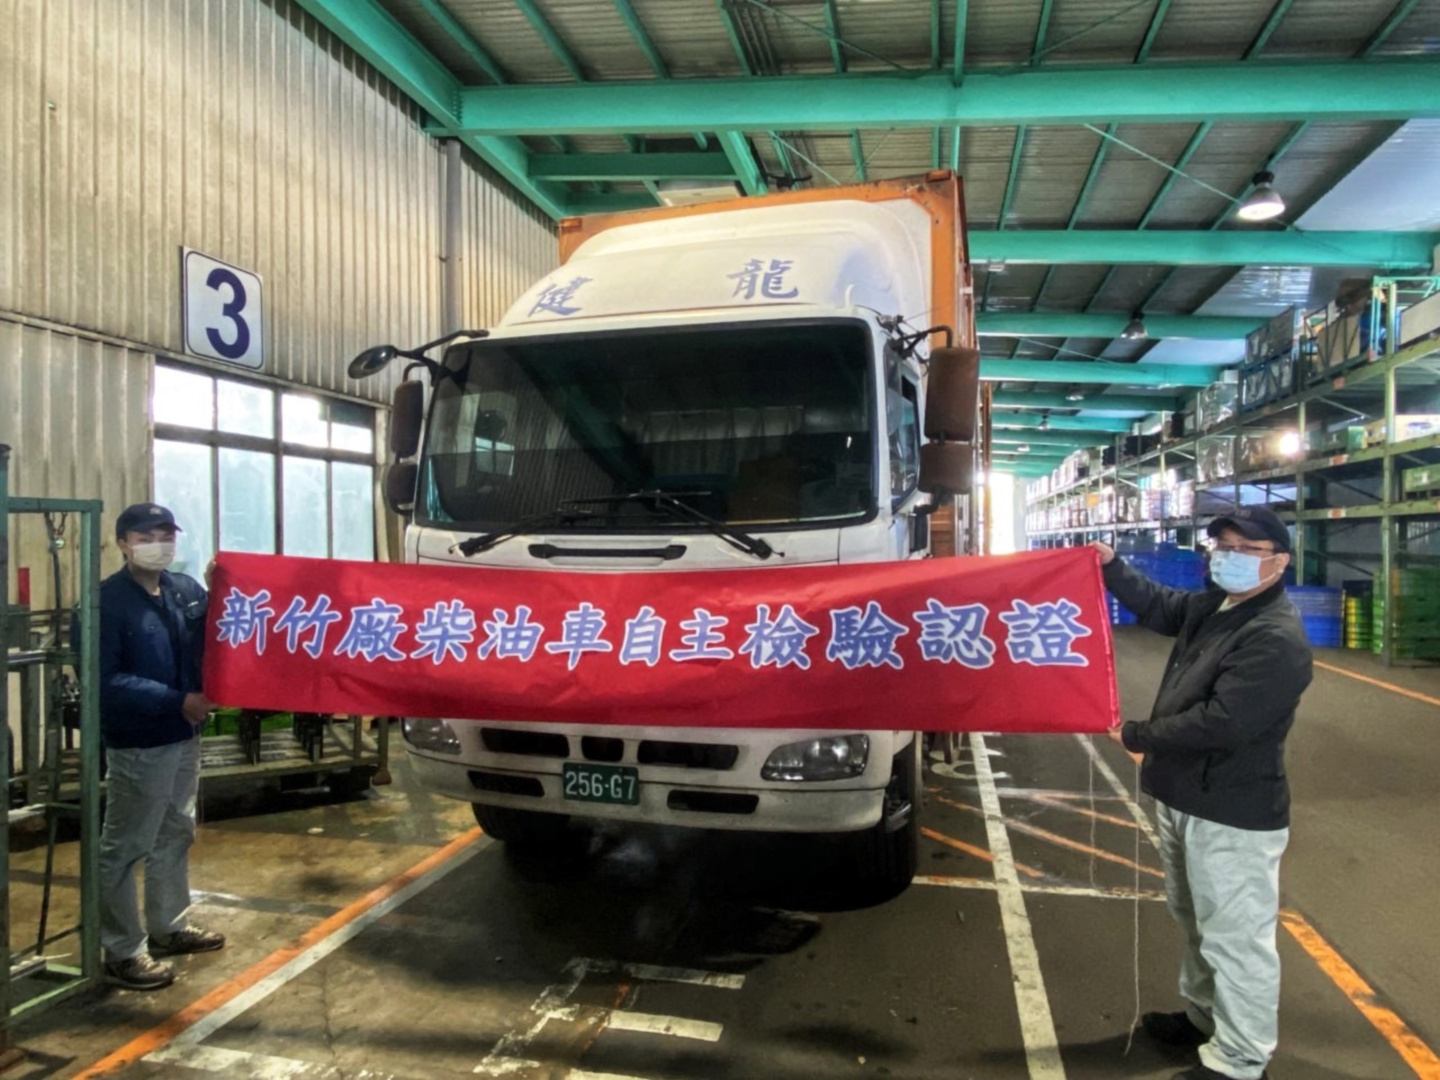 SMALL_新竹廠率先推動柴油交貨車自主管理標章認證降低柴油車排煙污染